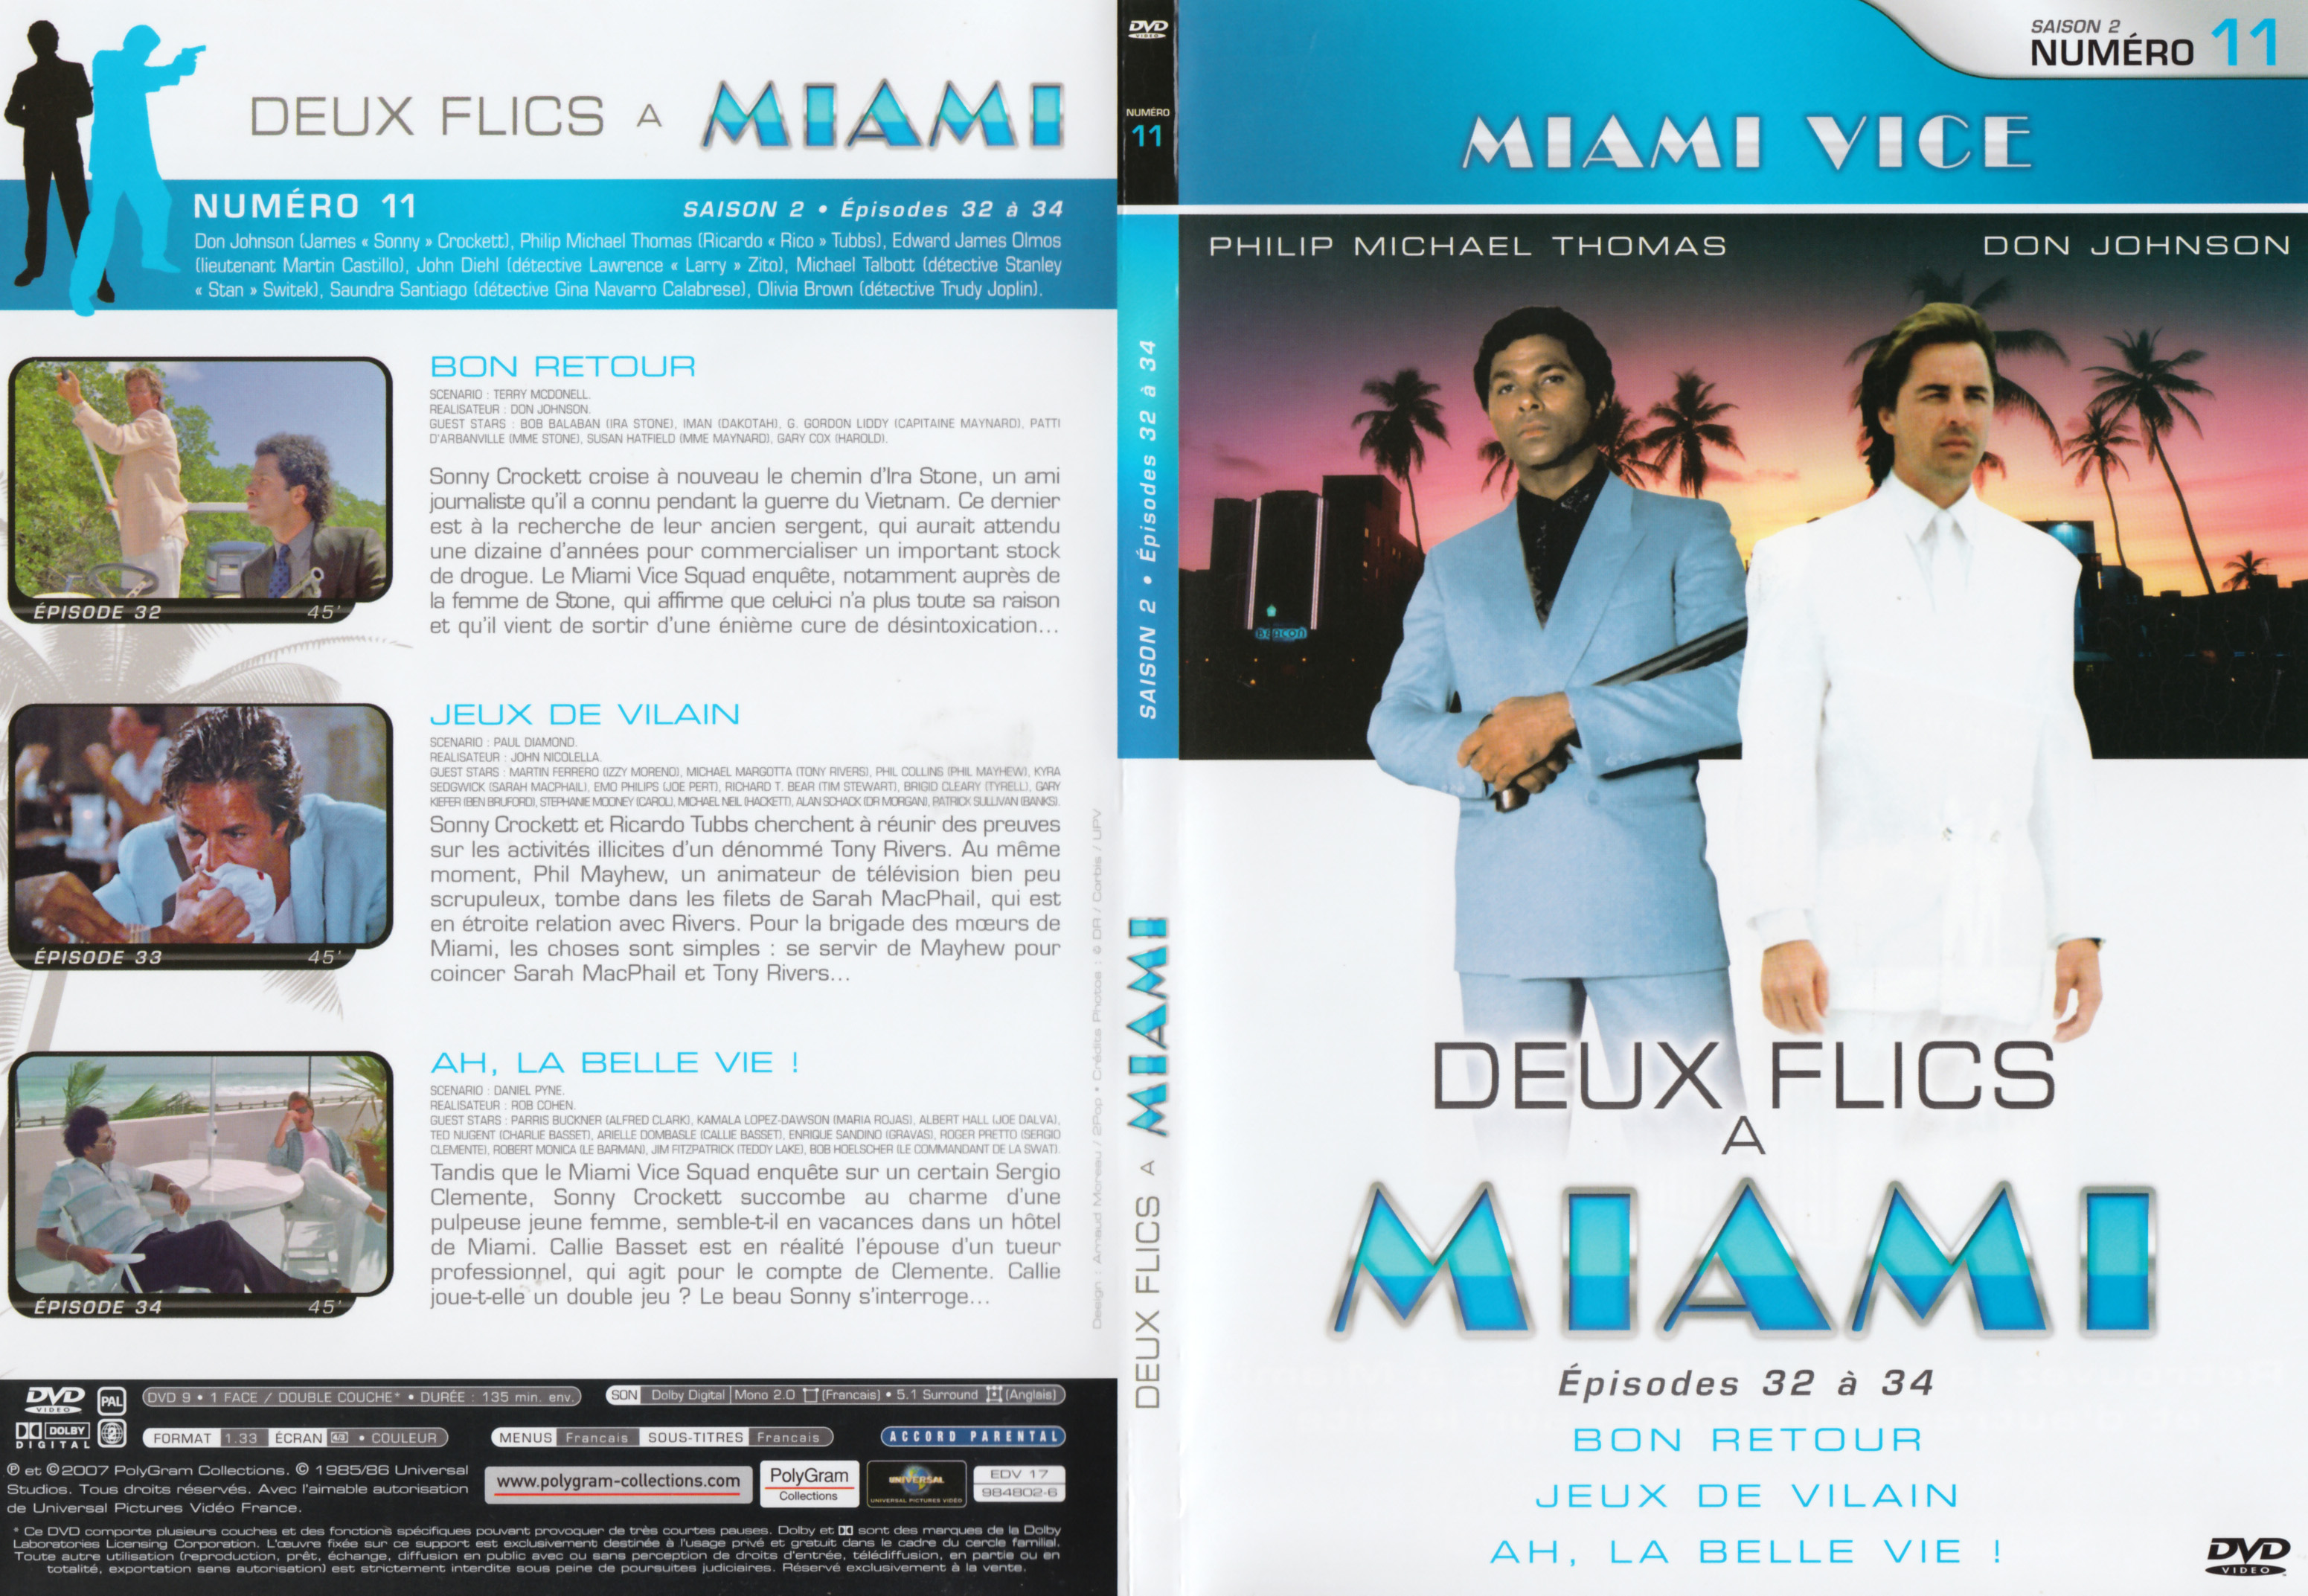 Jaquette DVD Deux flics  Miami Saison 2 vol 11